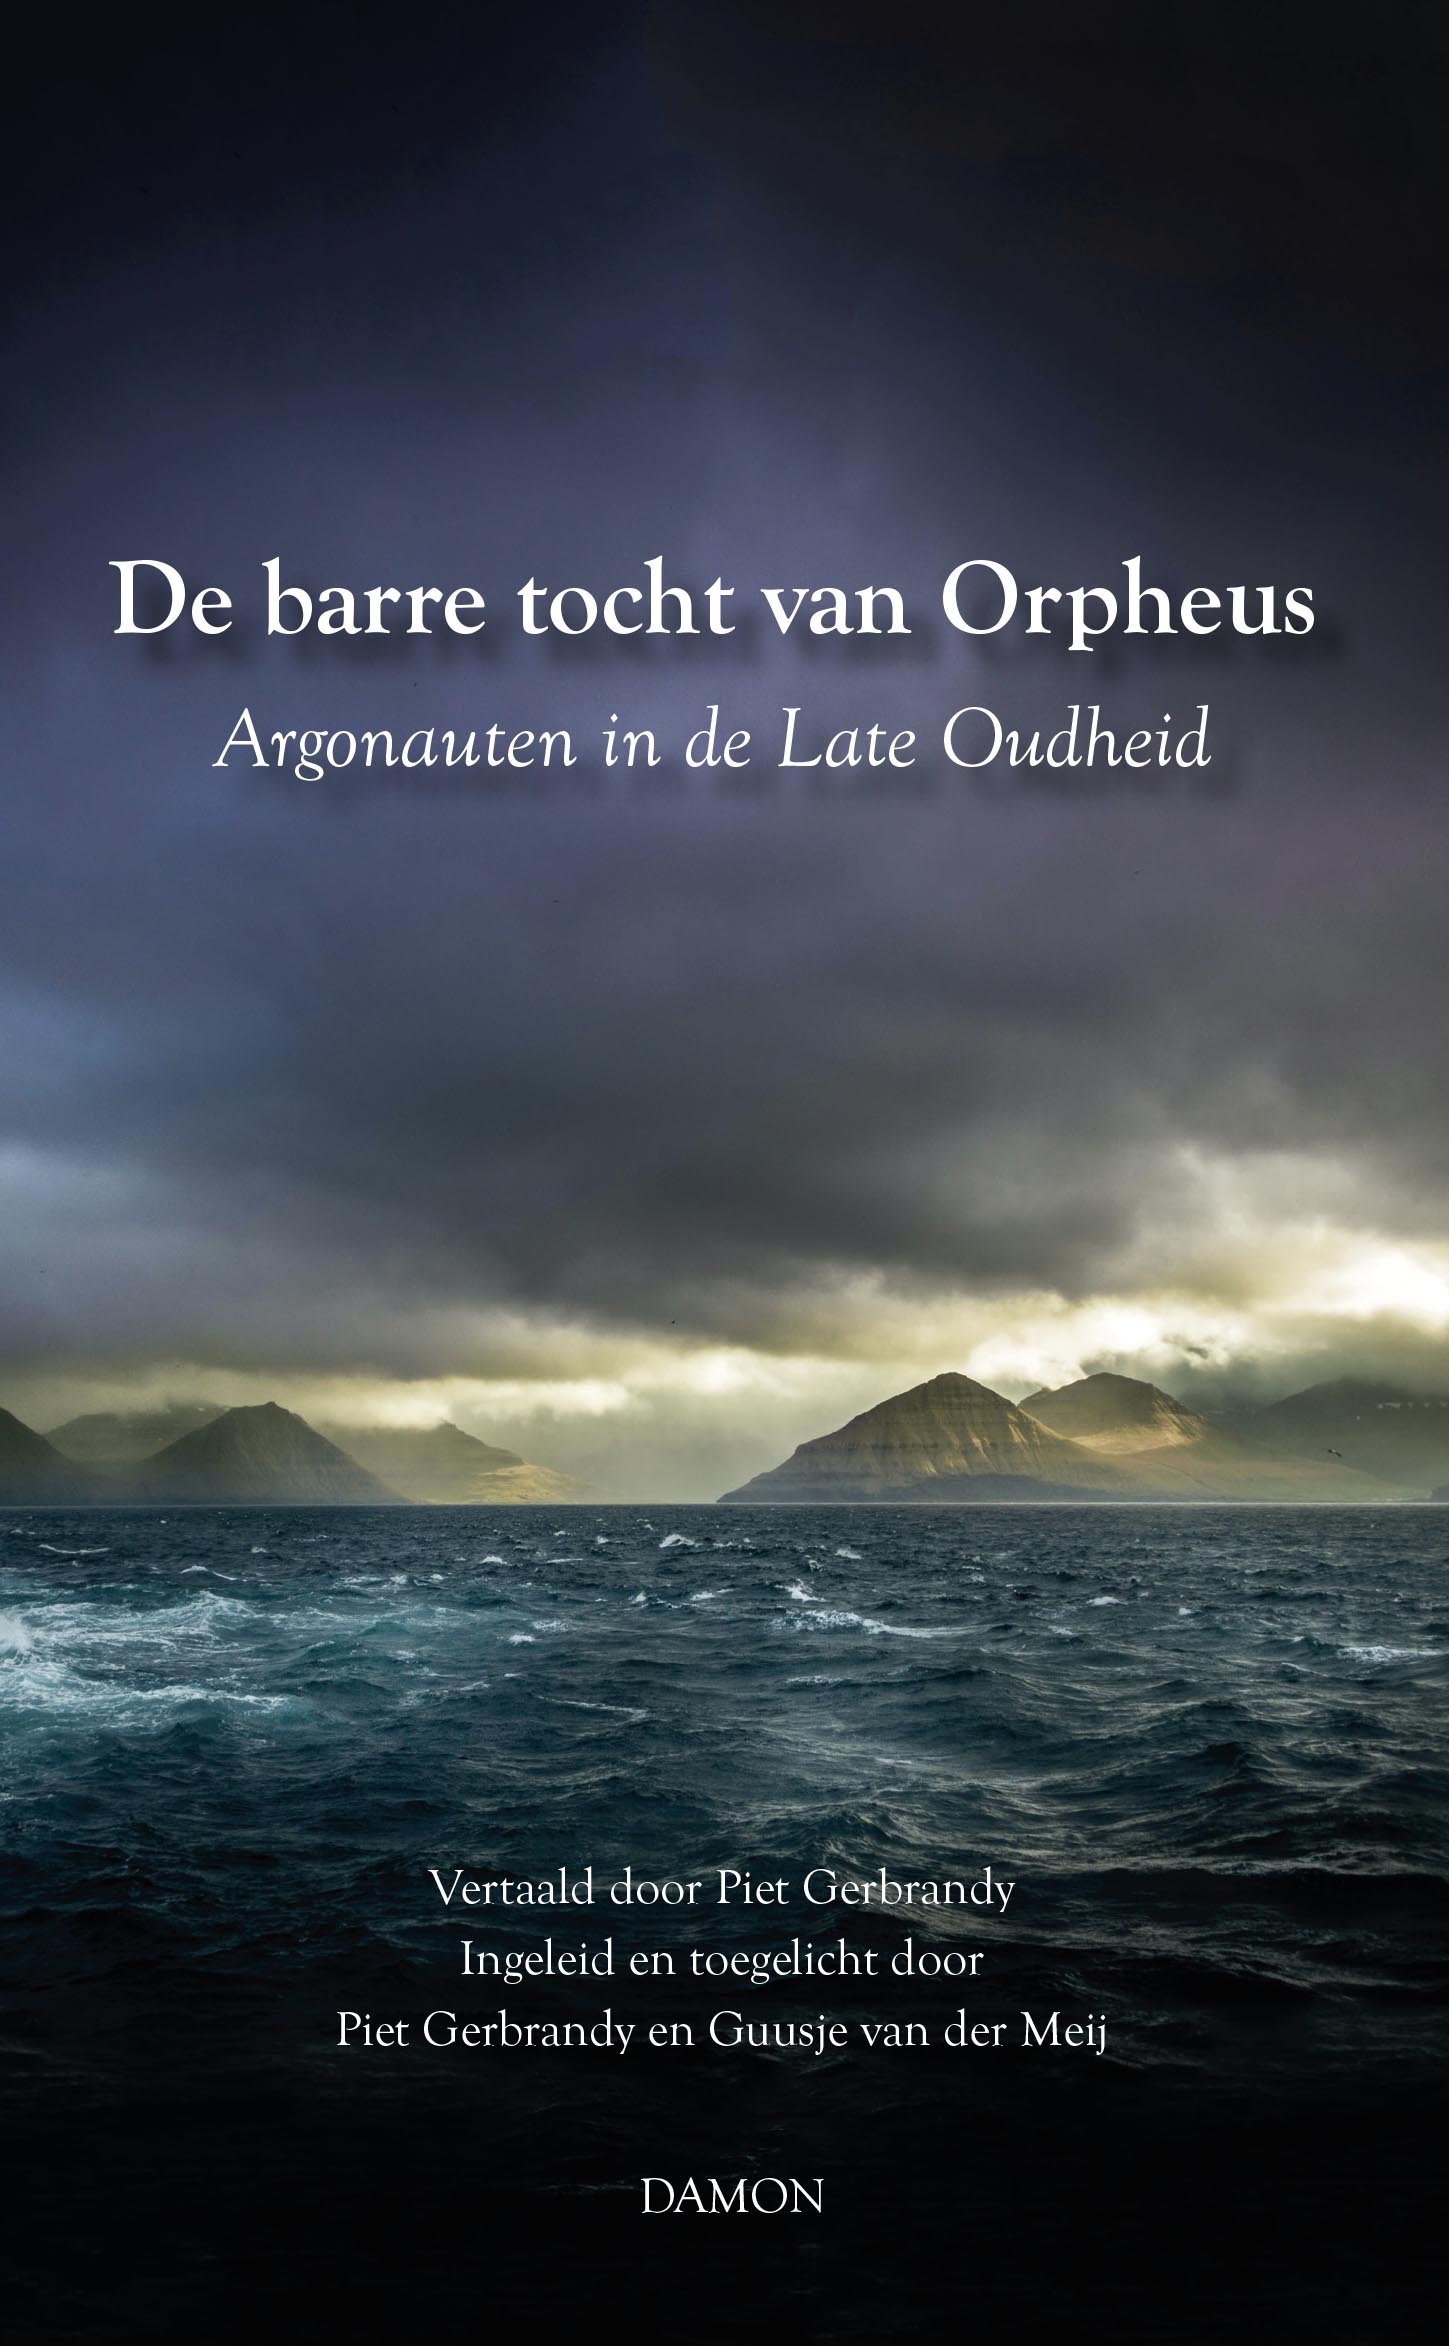 De barre tocht van Orpheus, Argonauten in de Late Oudheid cover